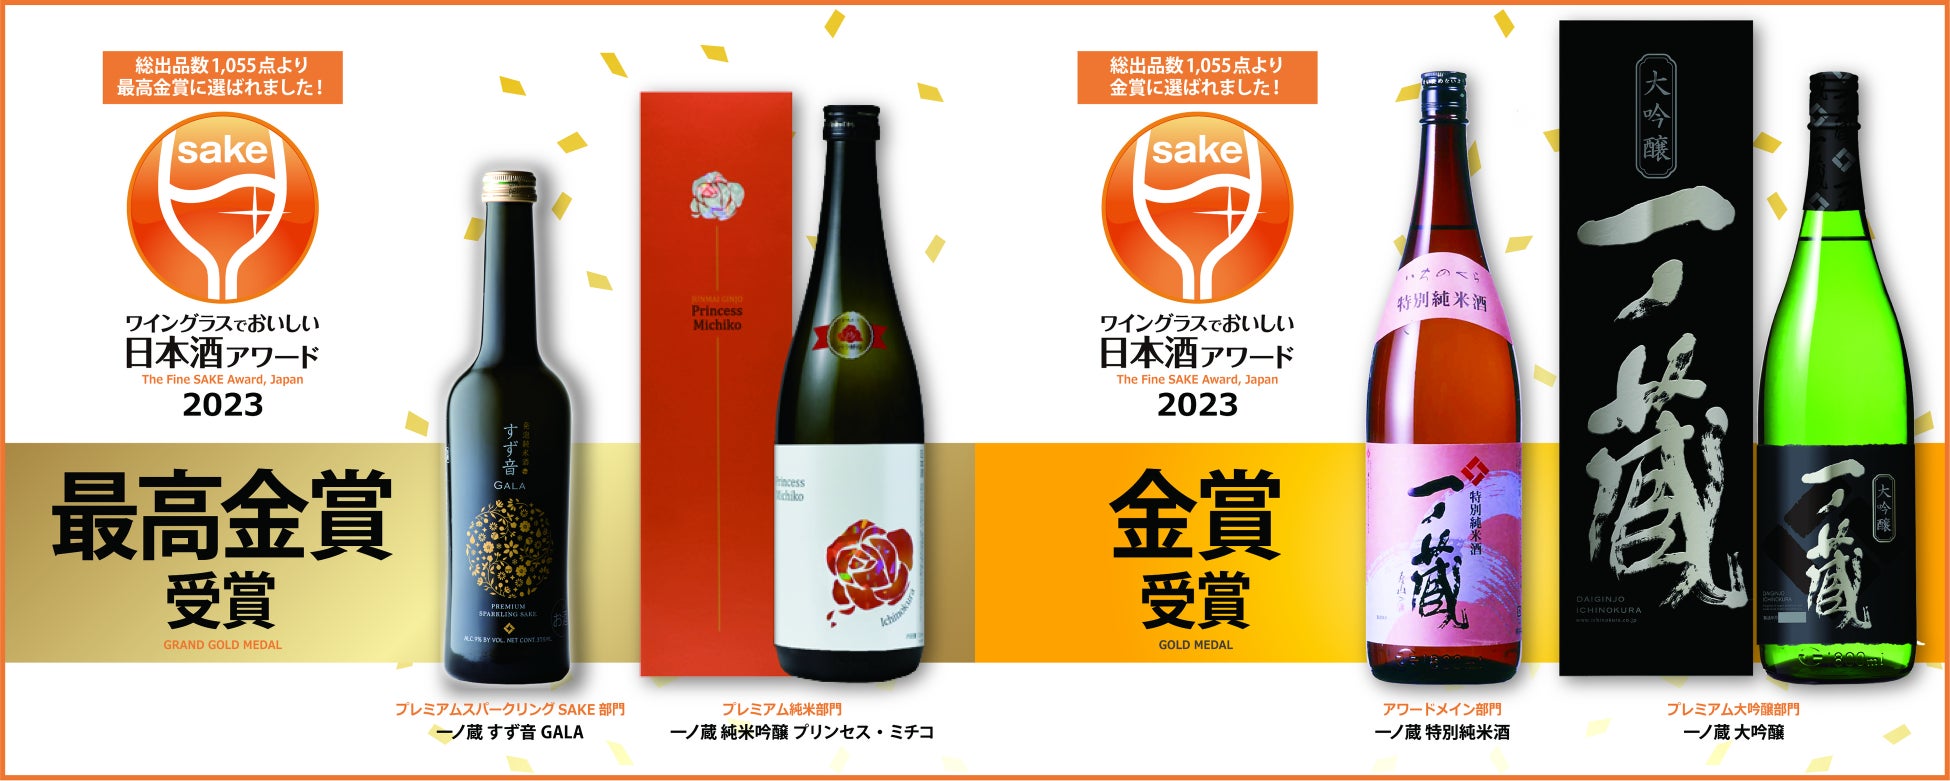 「一ノ蔵 純米吟醸 プリンセス・ミチコ」、「一ノ蔵 すず音GALA」が「ワイングラスでおいしい日本酒アワード2023」で最高金賞受賞！